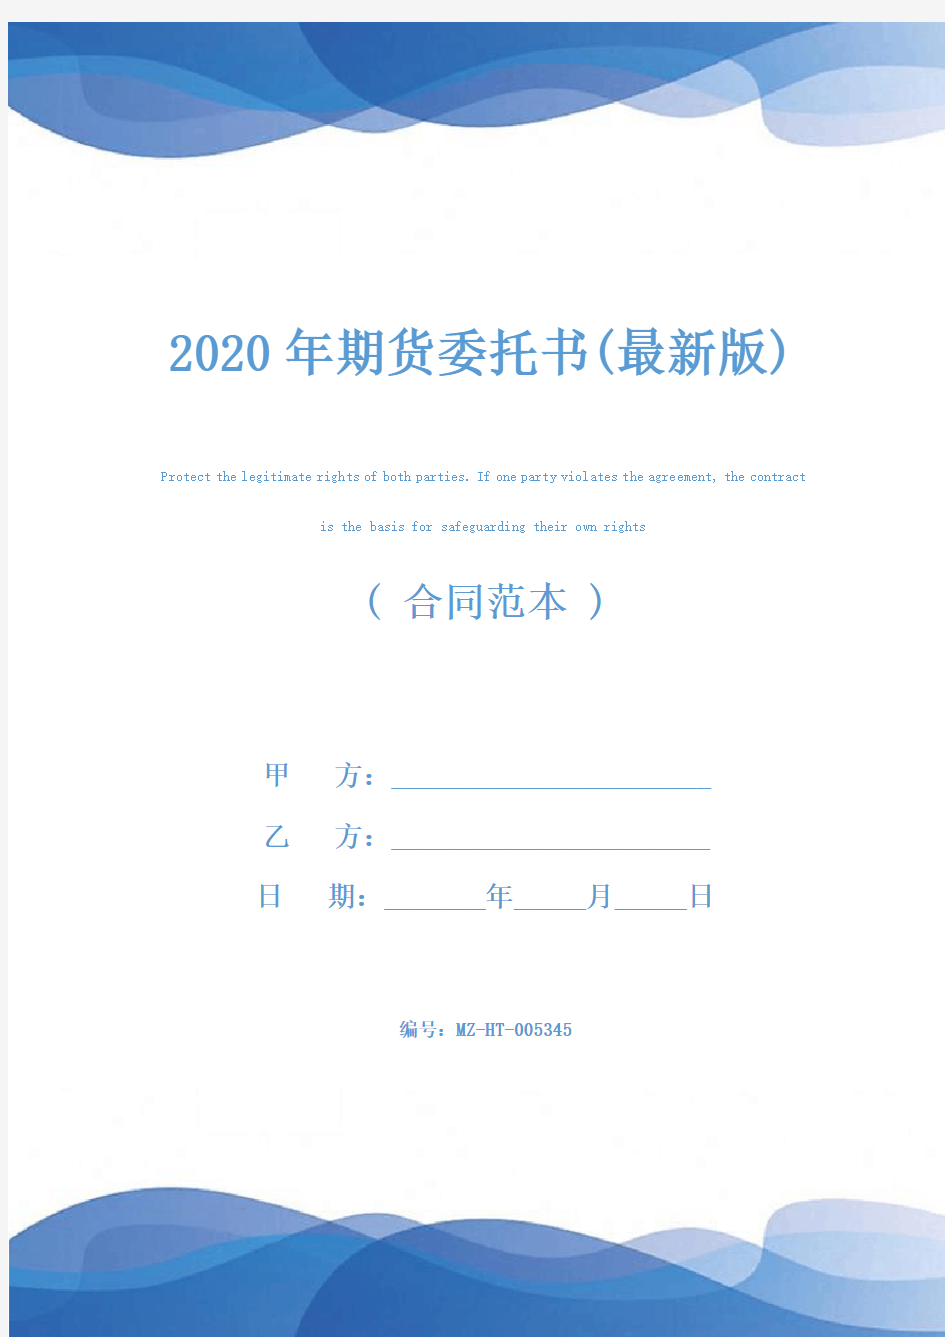 2020年期货委托书(最新版)